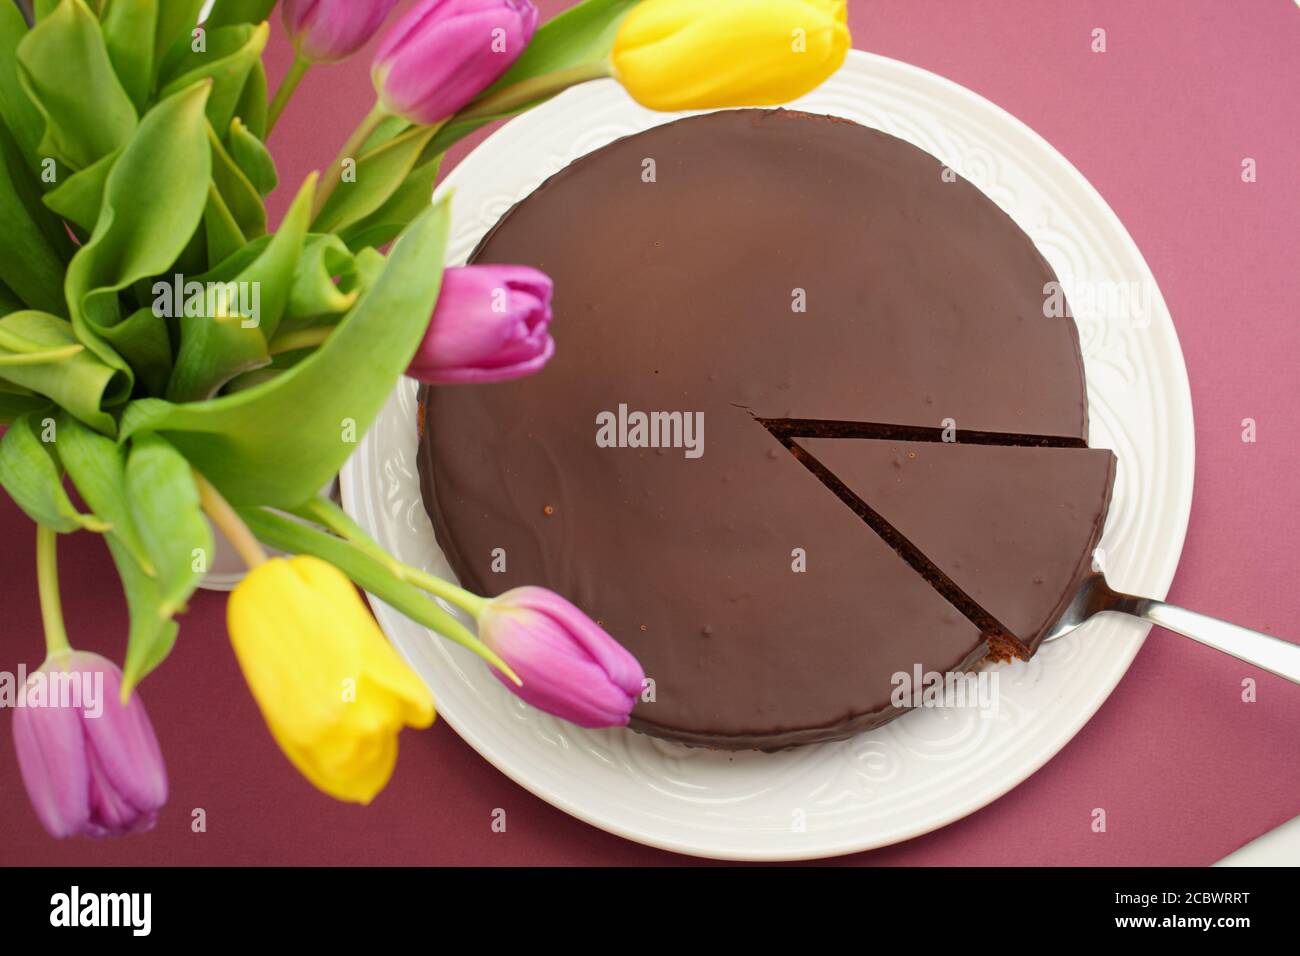 Schokolade Kuchen und einen Blumenstrauß aus Tulpen Stockfoto